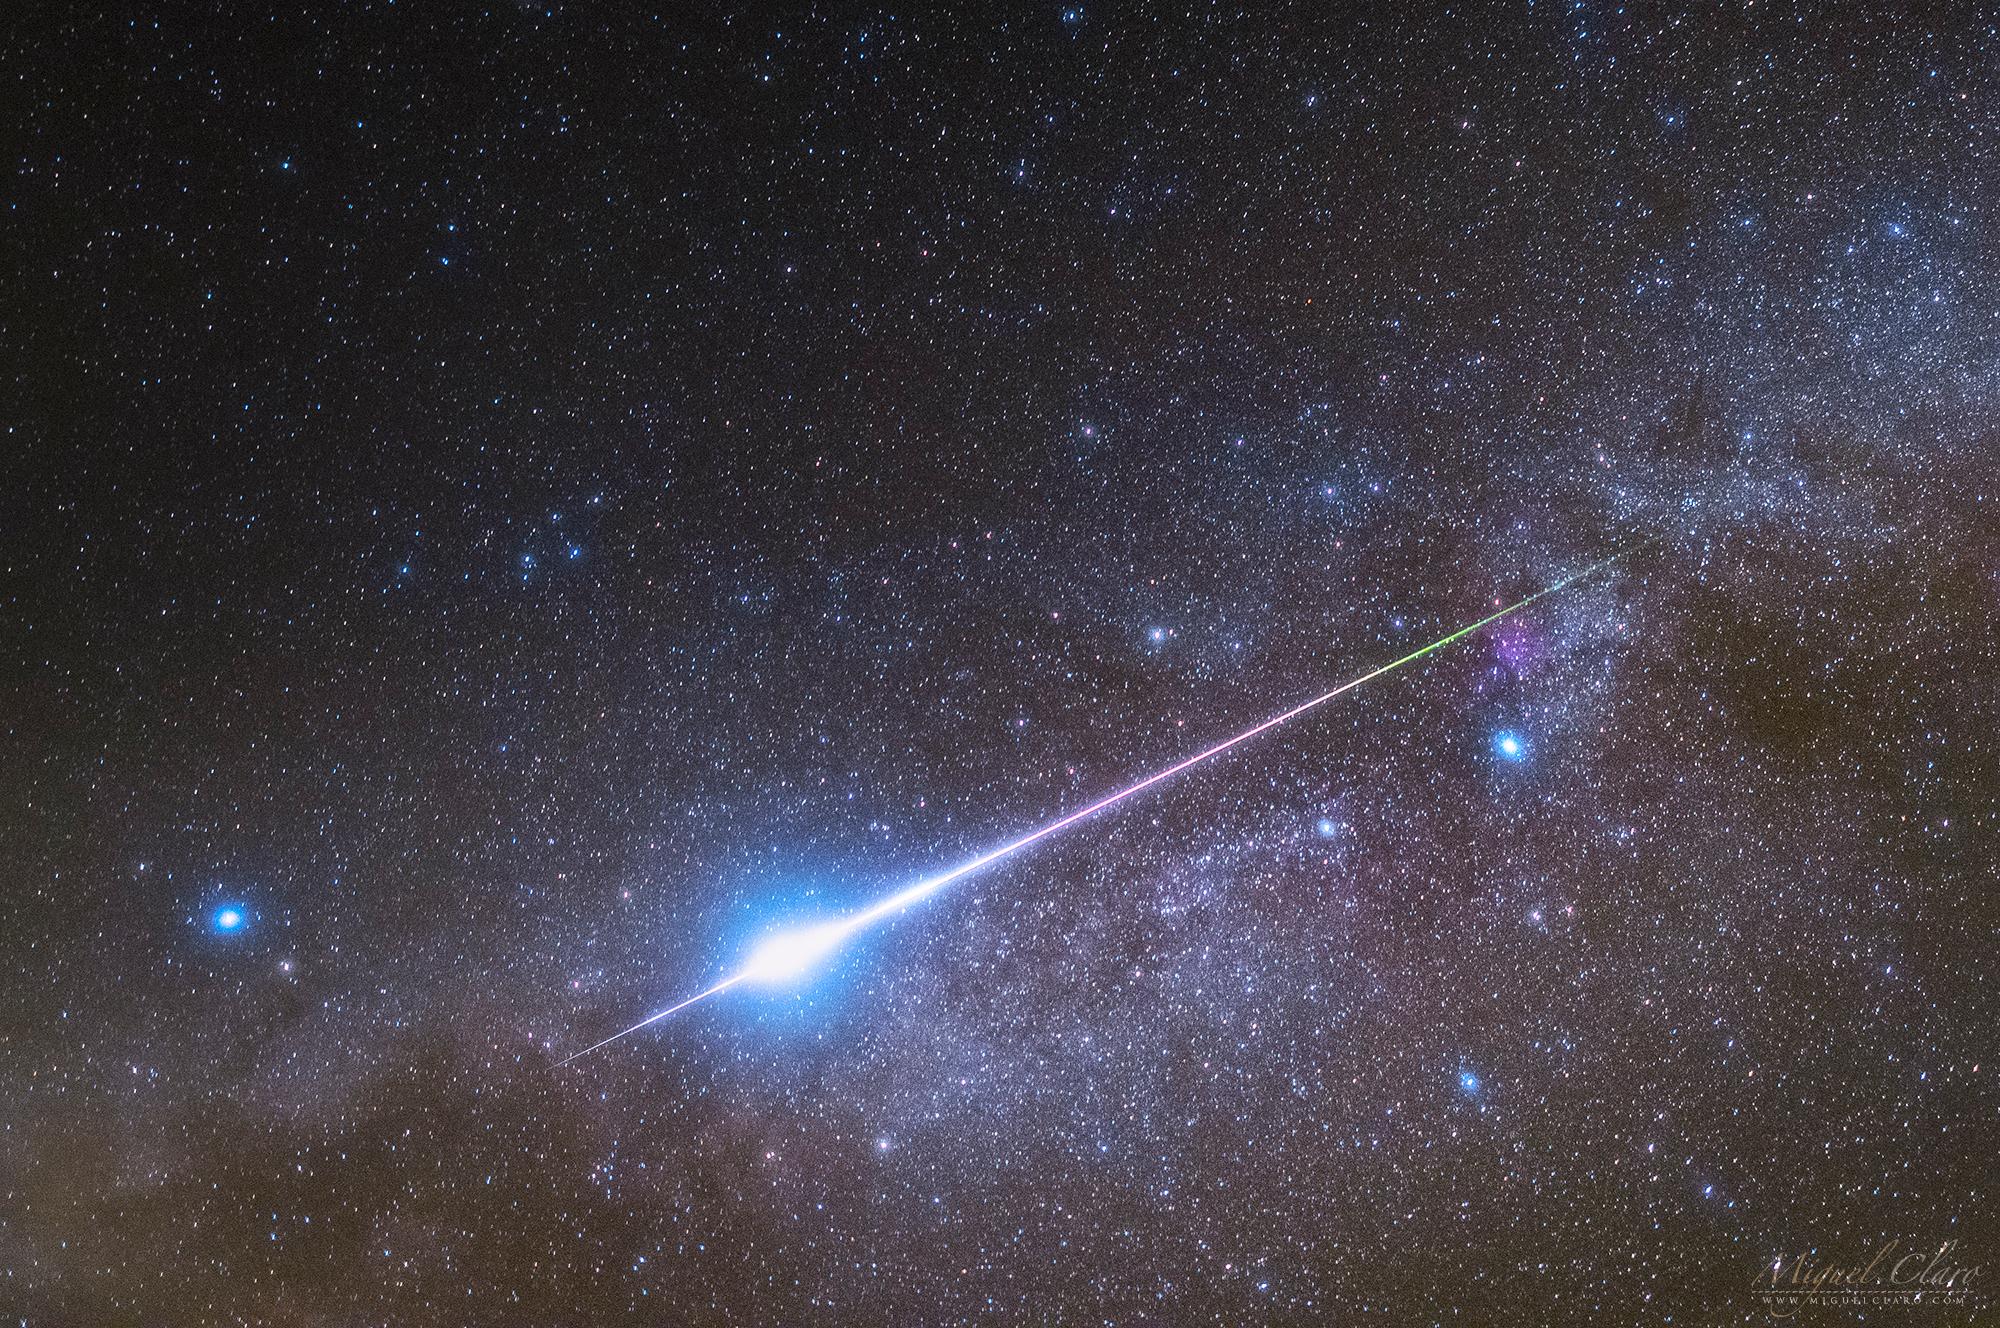 شهاب برشاوي ساطع يخطّ على امتداد مجرّة درب التبّانة من اليمين إلى اليسار عبر إطار الصورة وخلفه السماء المرصّعة بالنجوم.